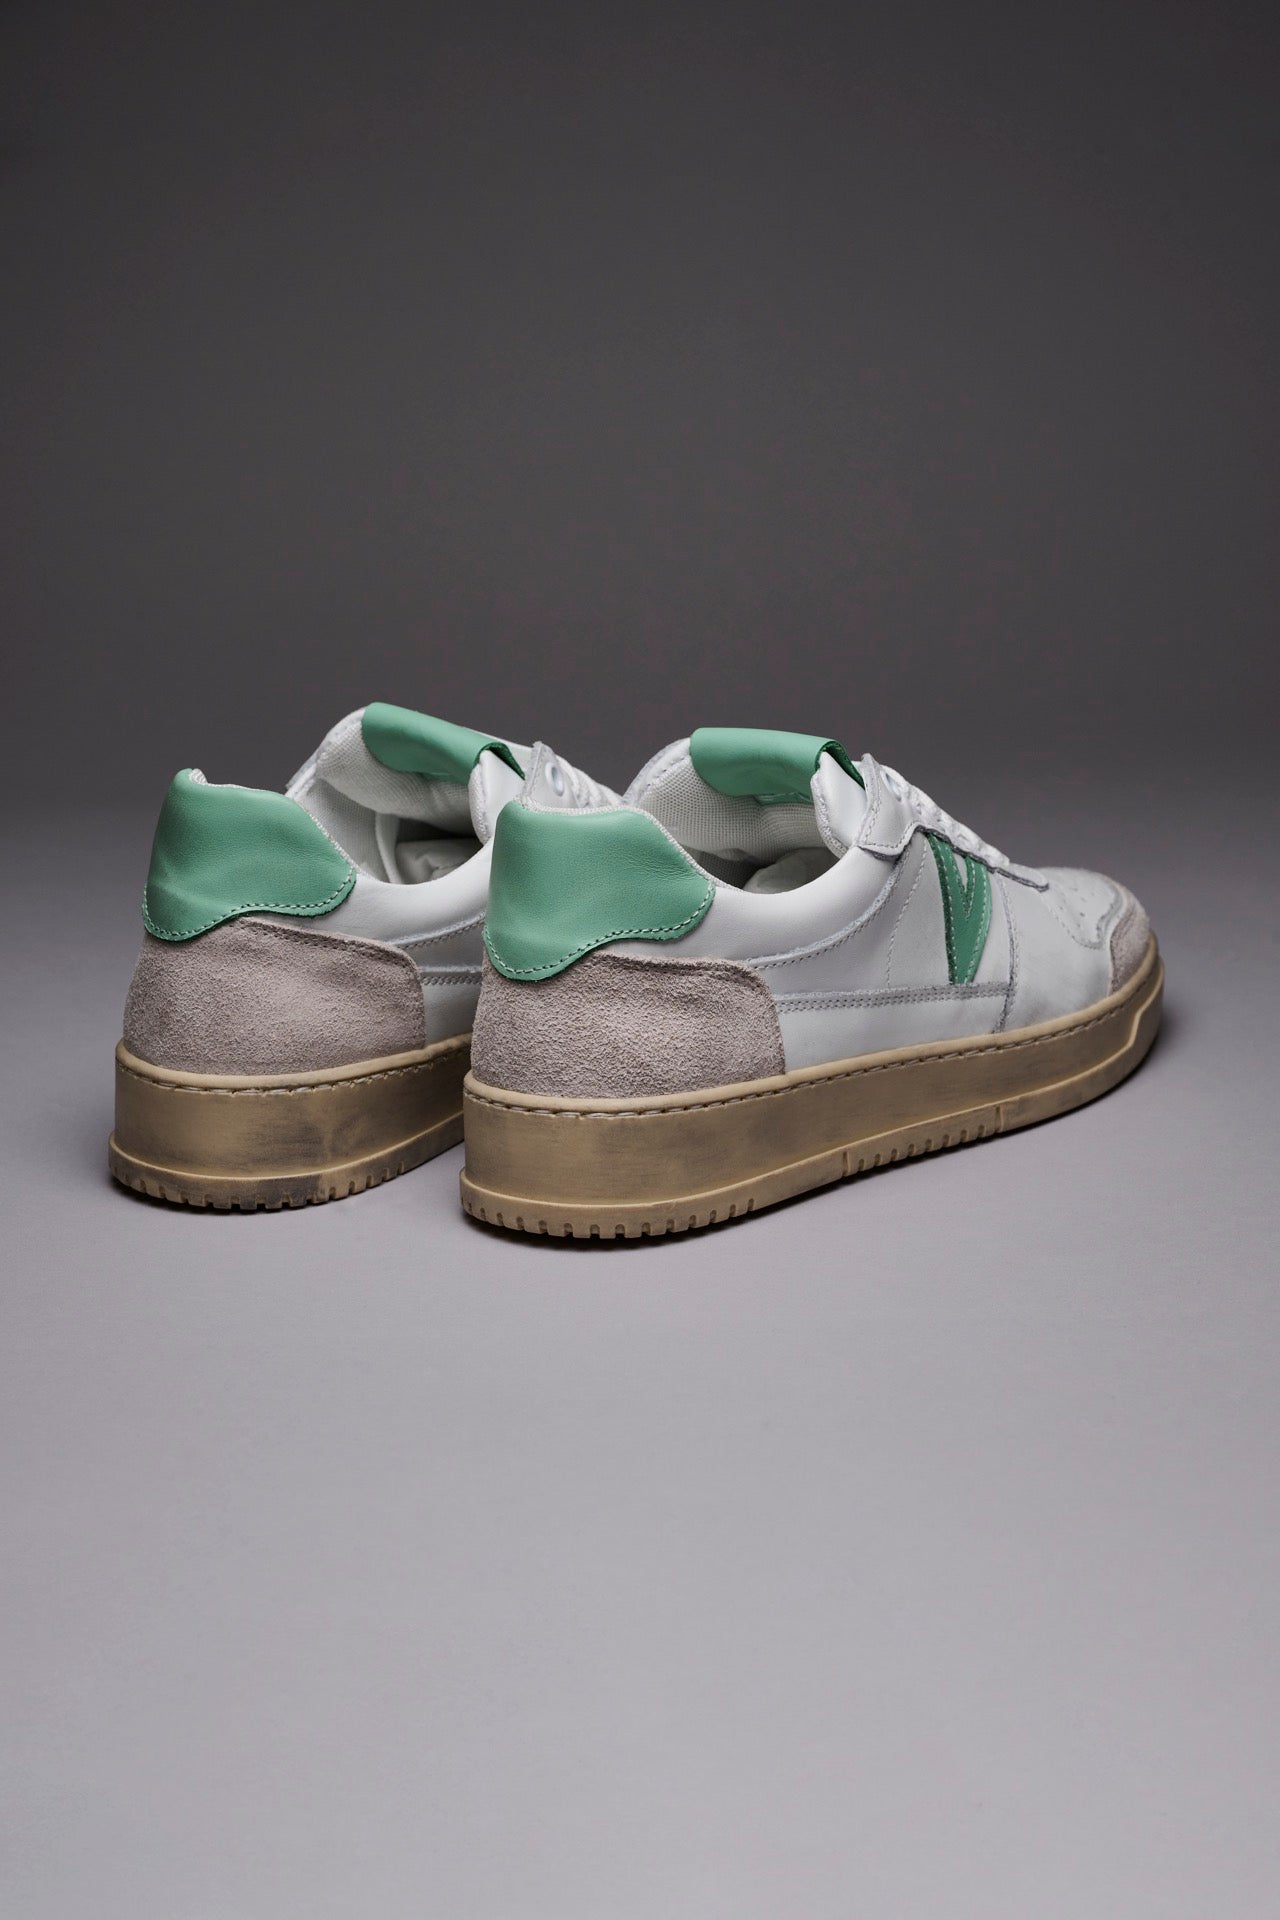 COLLEGE - Sneakers Bianca con retro e inserto Verde Menta